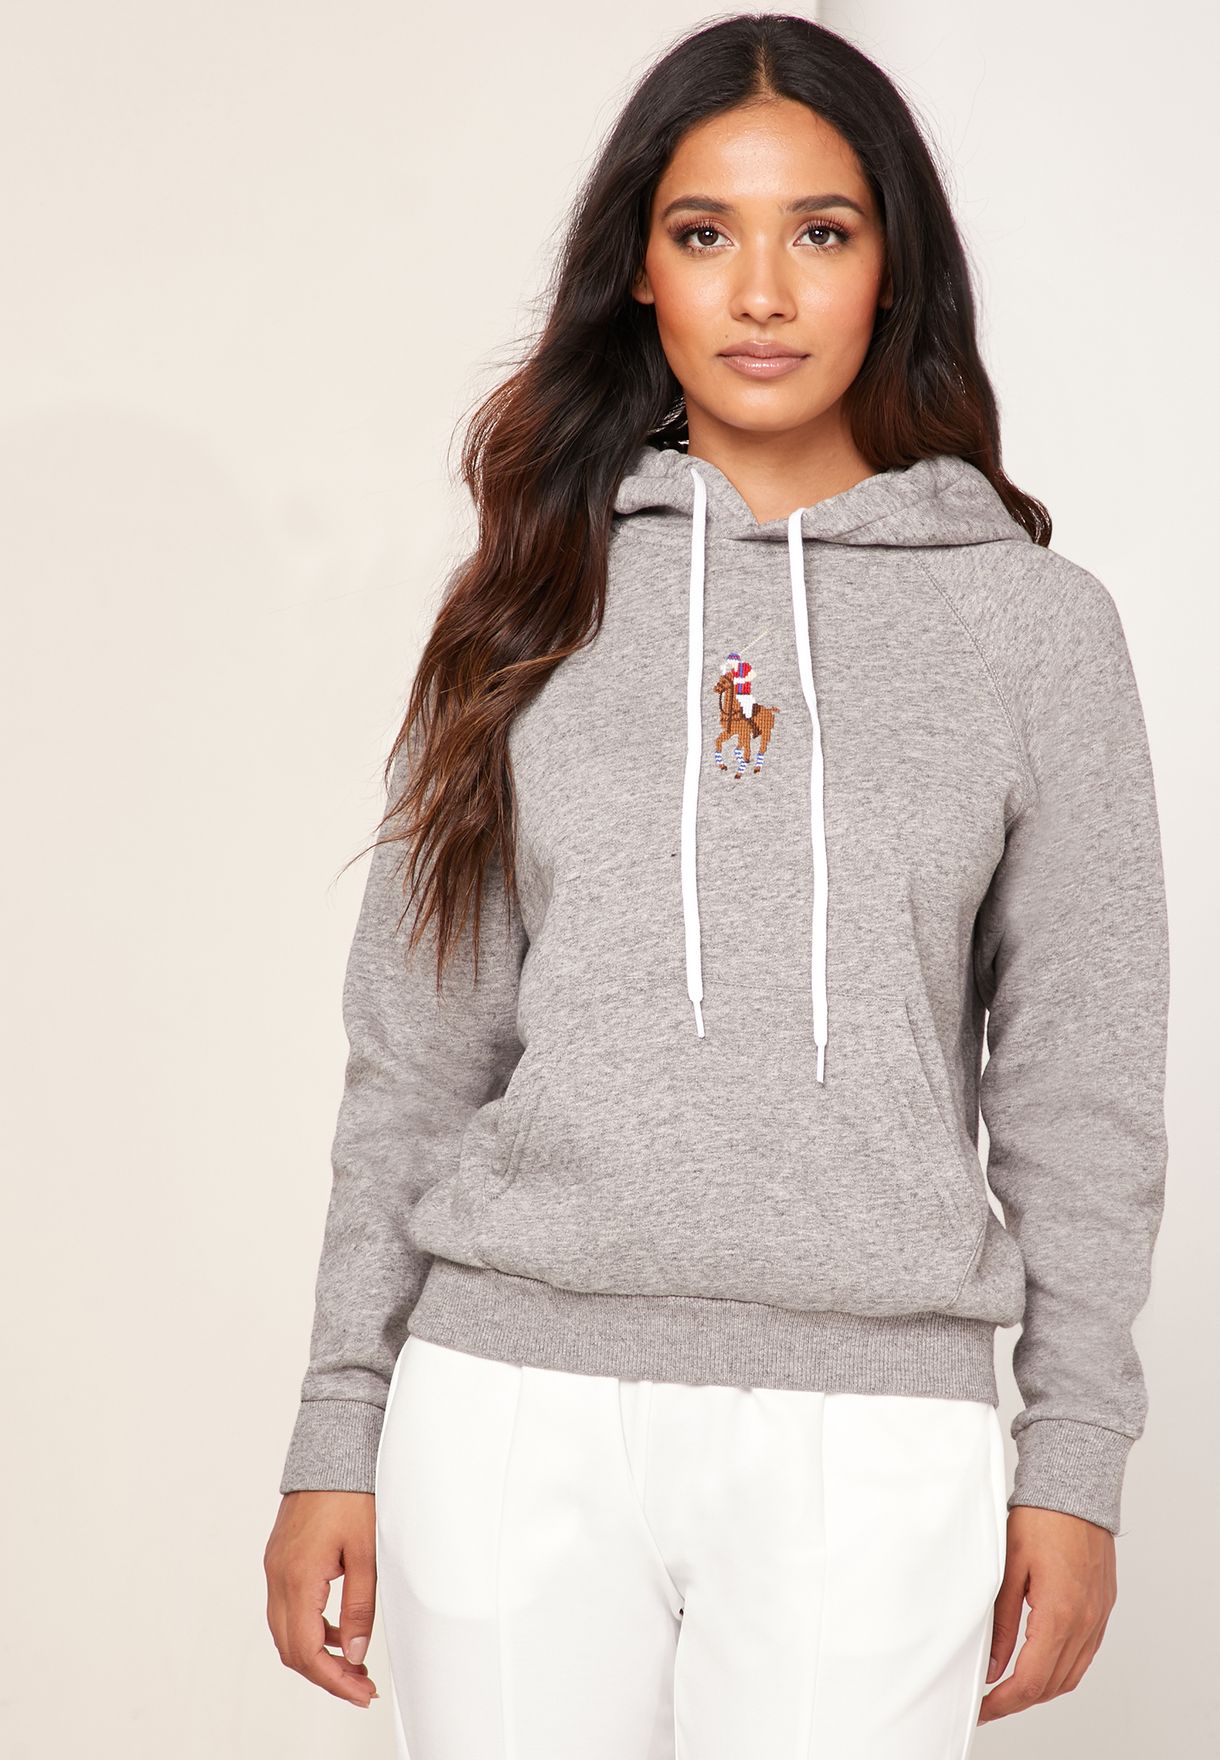 polo ralph lauren hoodie women's